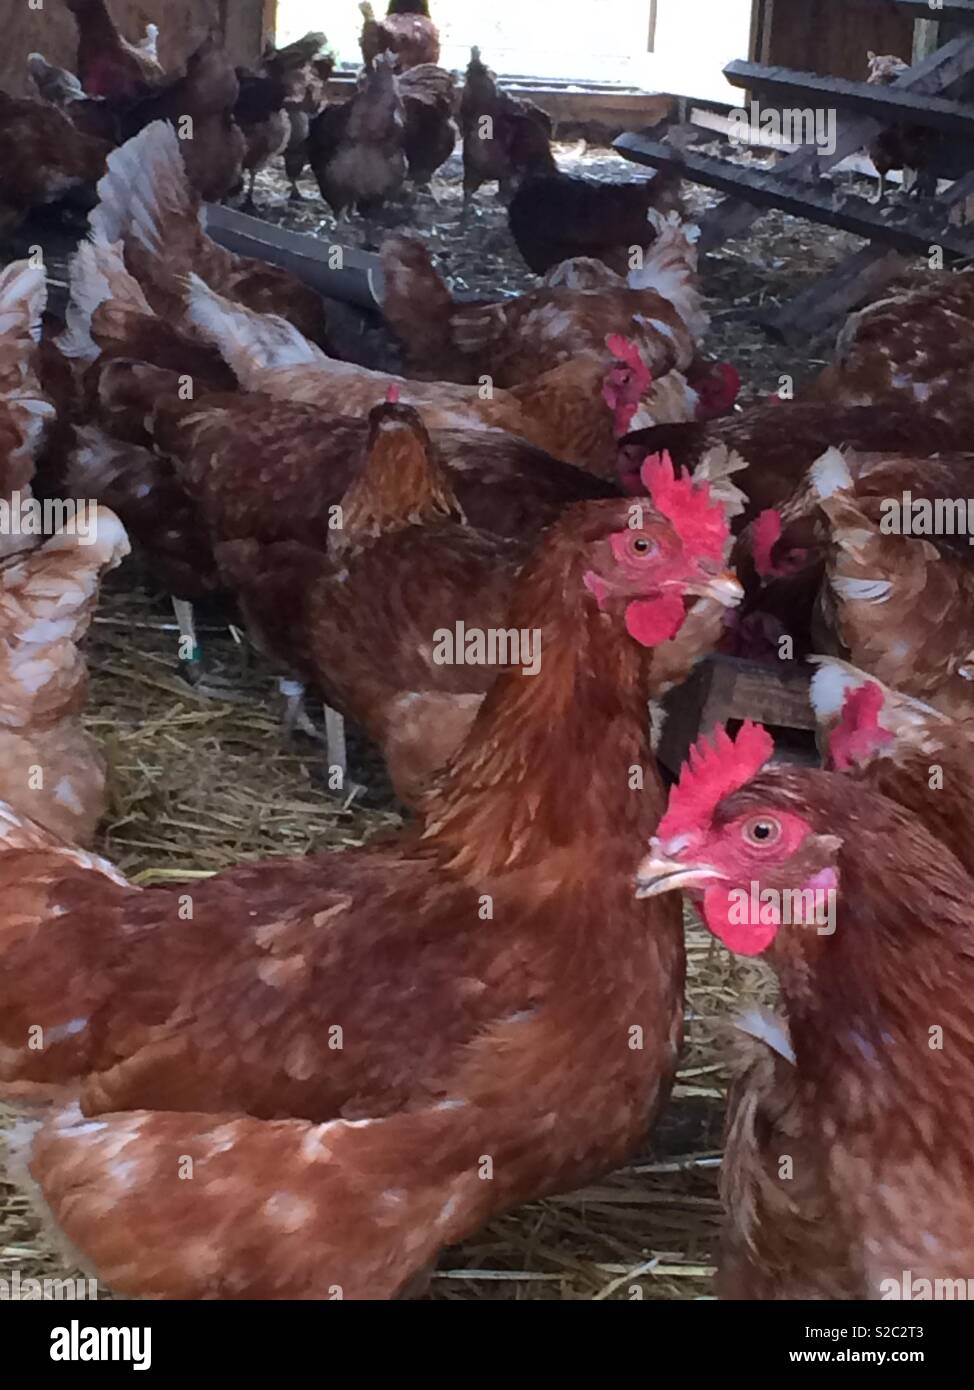 Hens inside barn Stock Photo